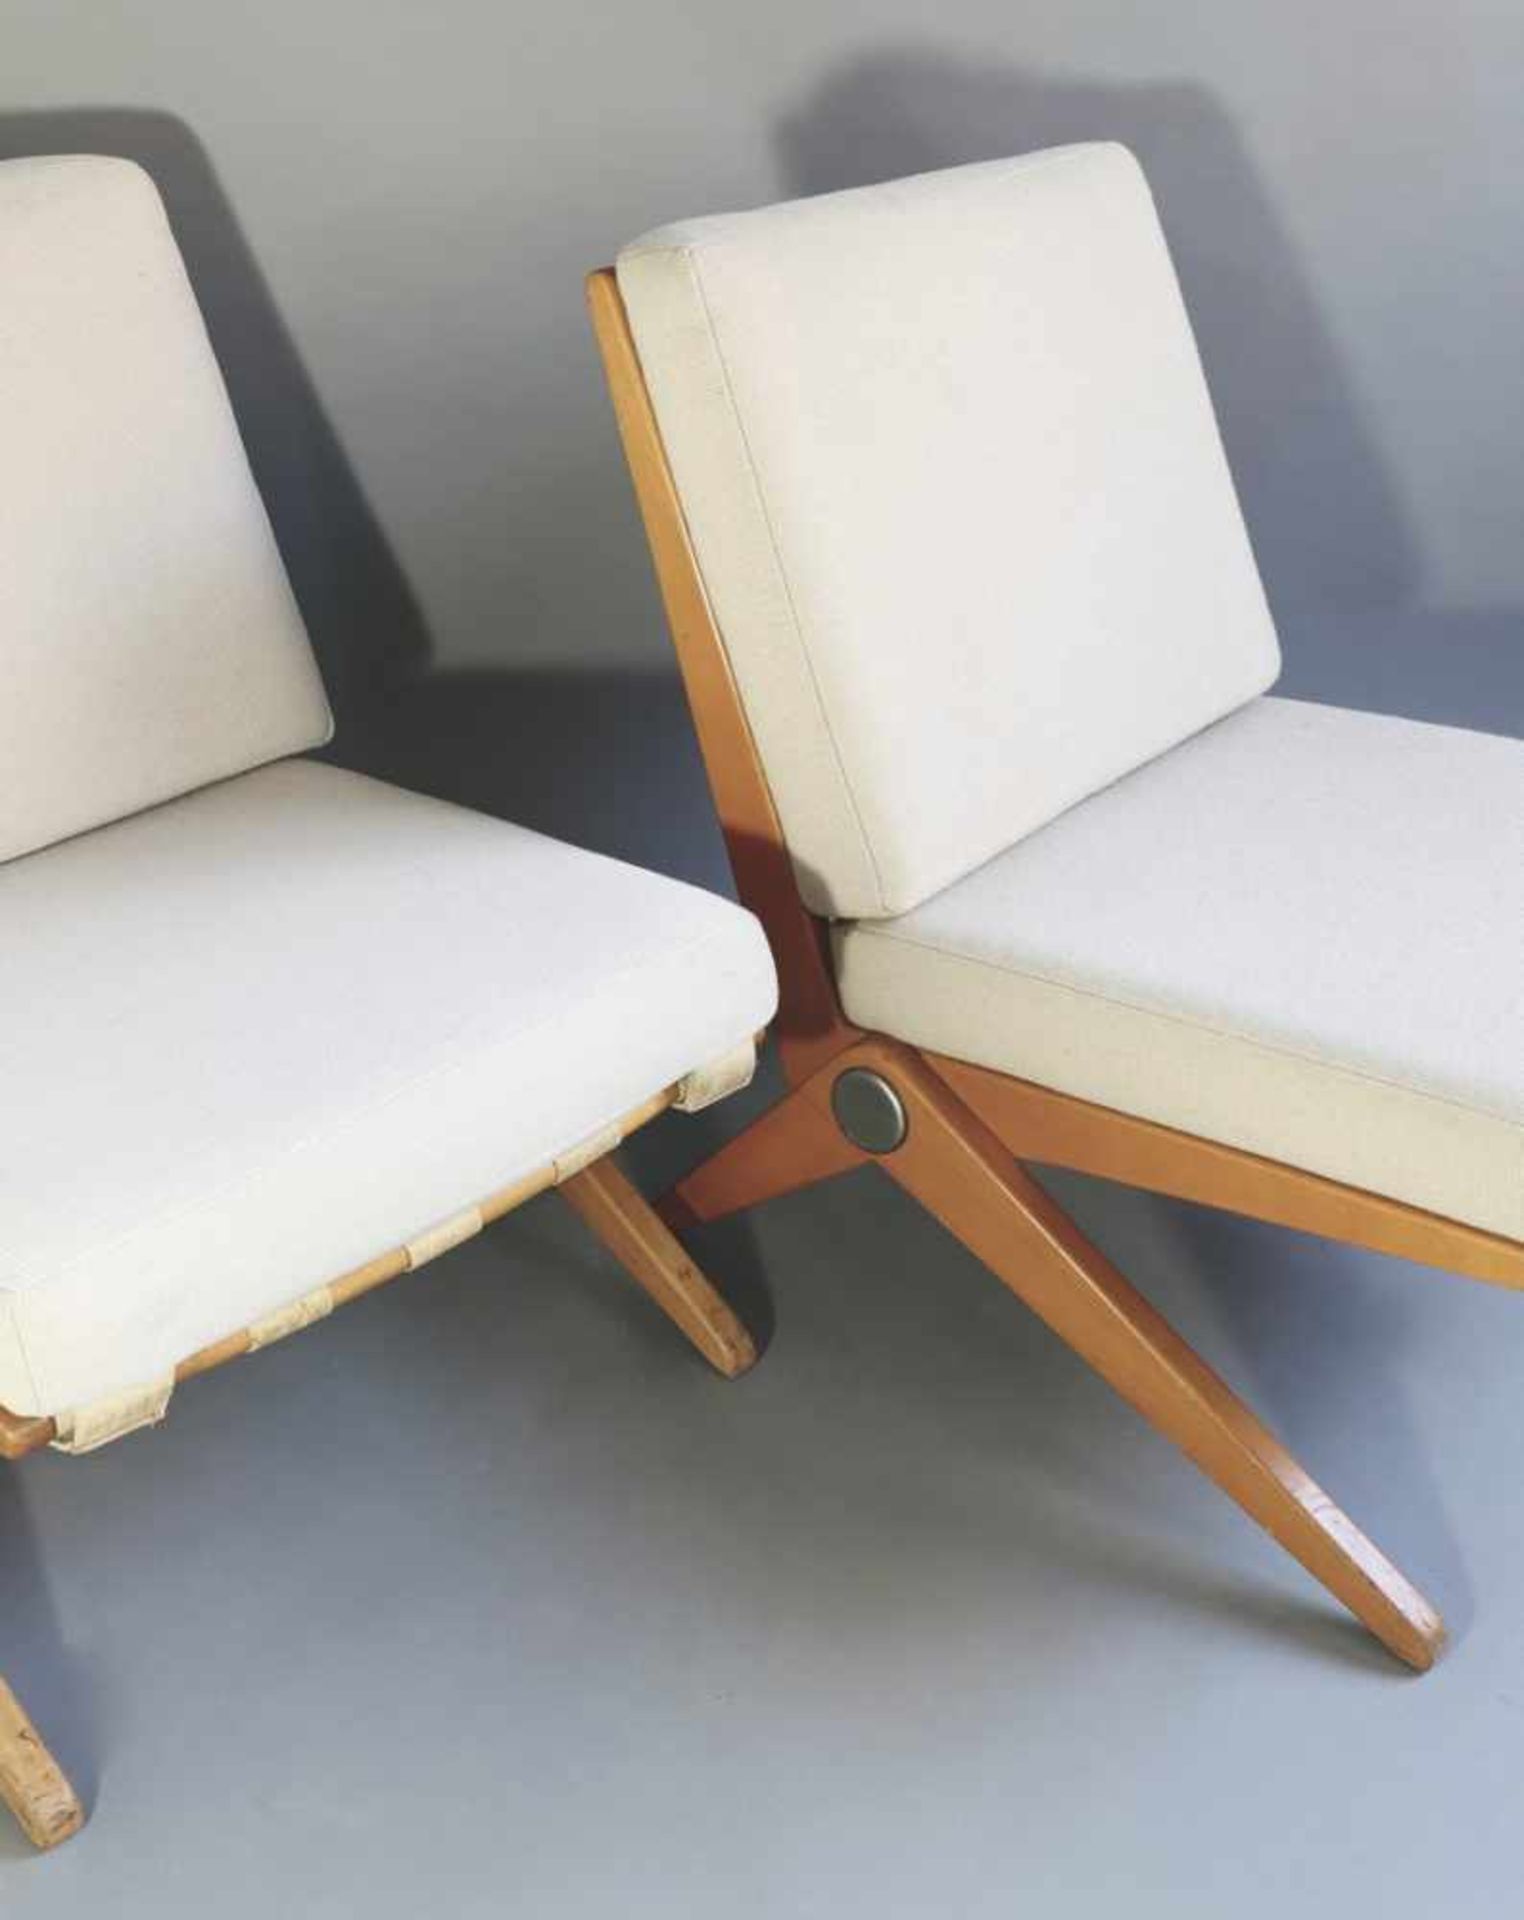 Pierre JeanneretKnoll InternationalDesign 19482 Sessel Modell Scissor Chair. Entwurf von 1948. - Bild 2 aus 2